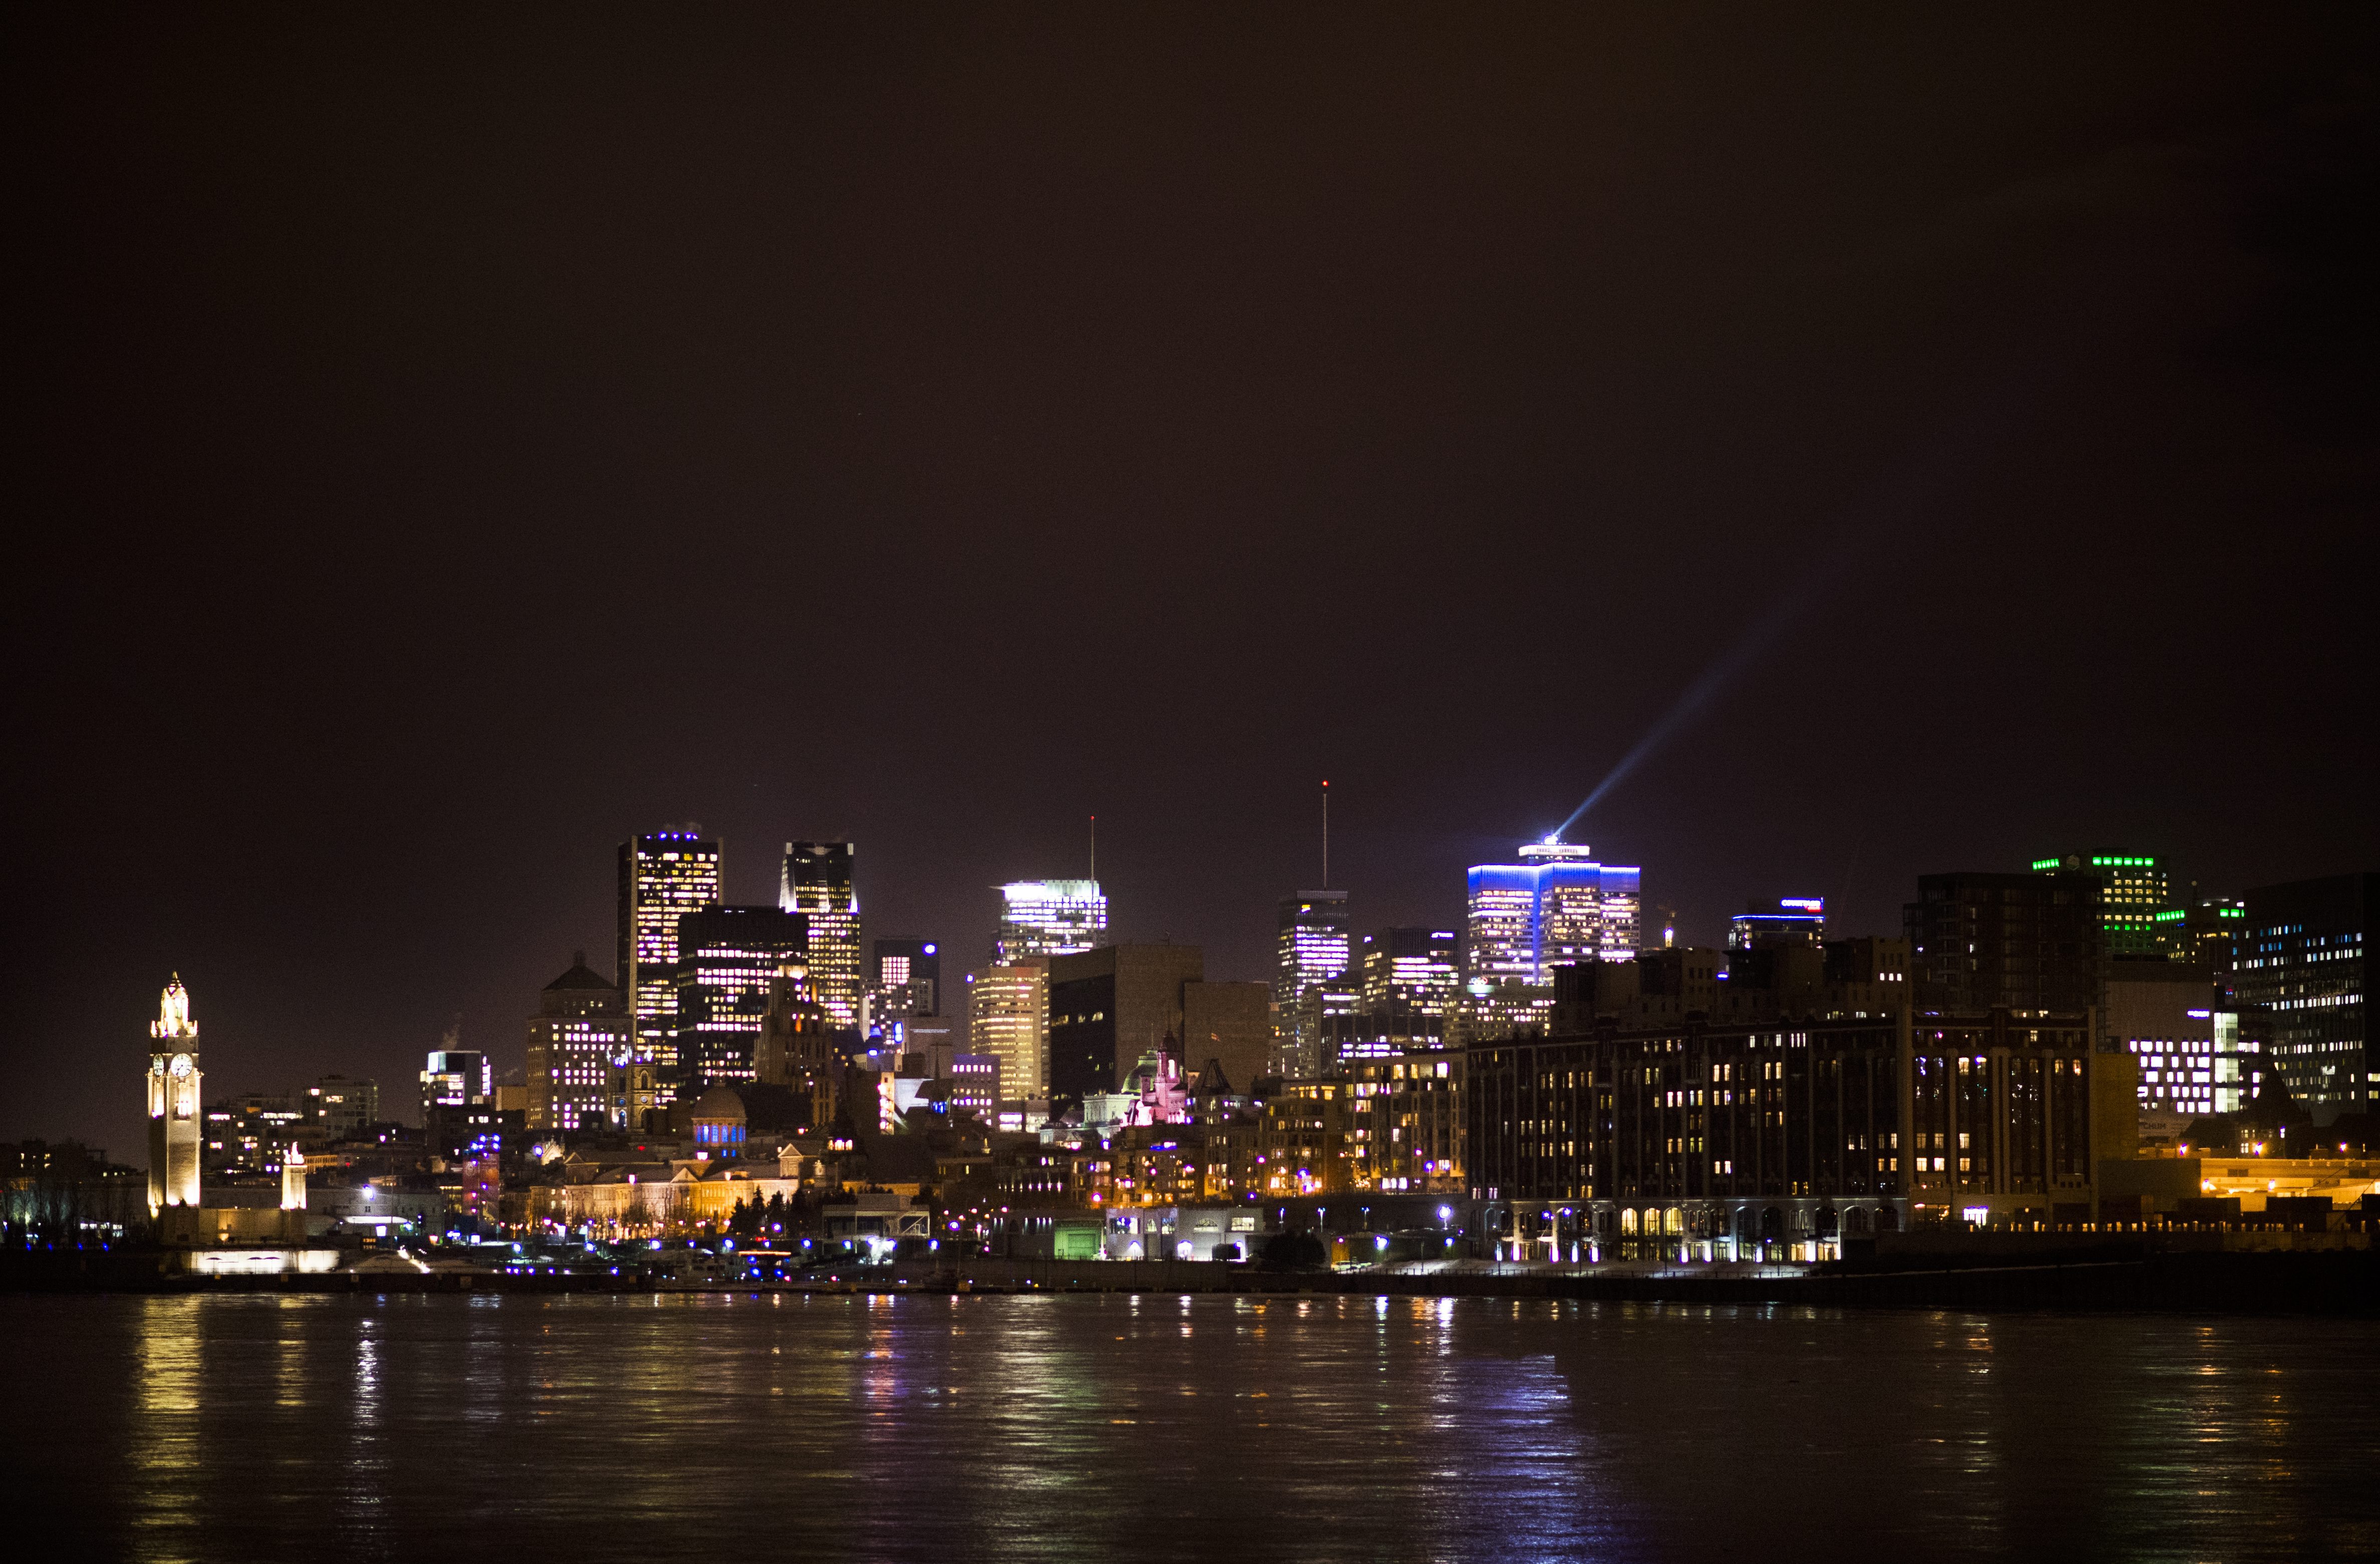 Montreal este prezentat noaptea marți, 21 februarie 2017.